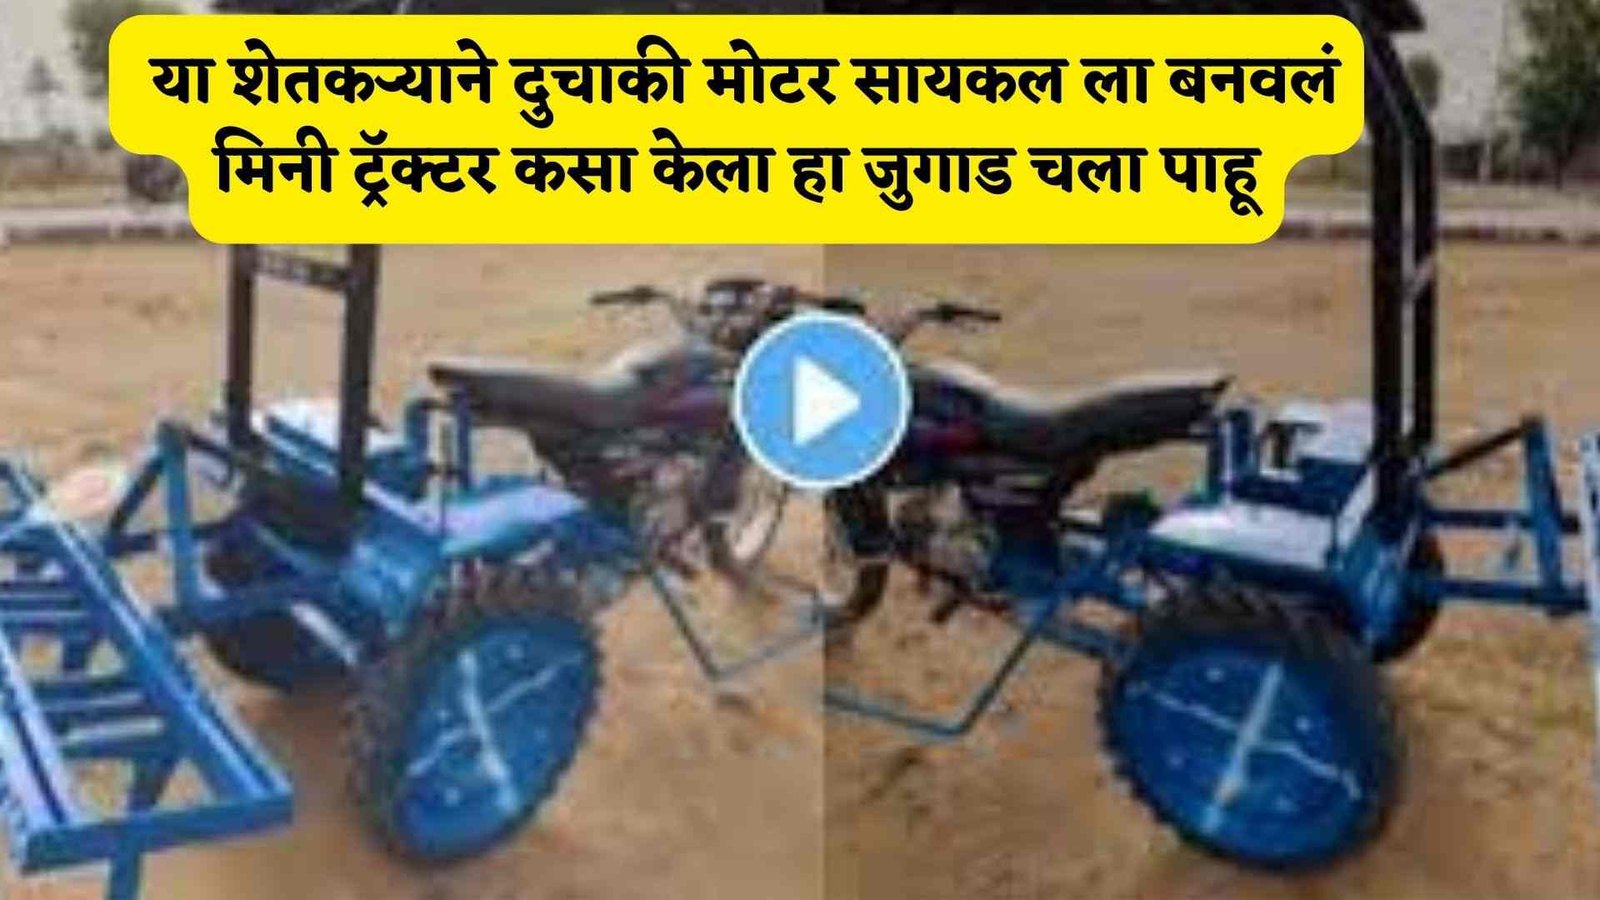 Jugaad jugaad :- या शेतकऱ्याने दुचाकी मोटर सायकल ला बनवलं मिनी ट्रॅक्टर कसा केला हा जुगाड चला पाहू.